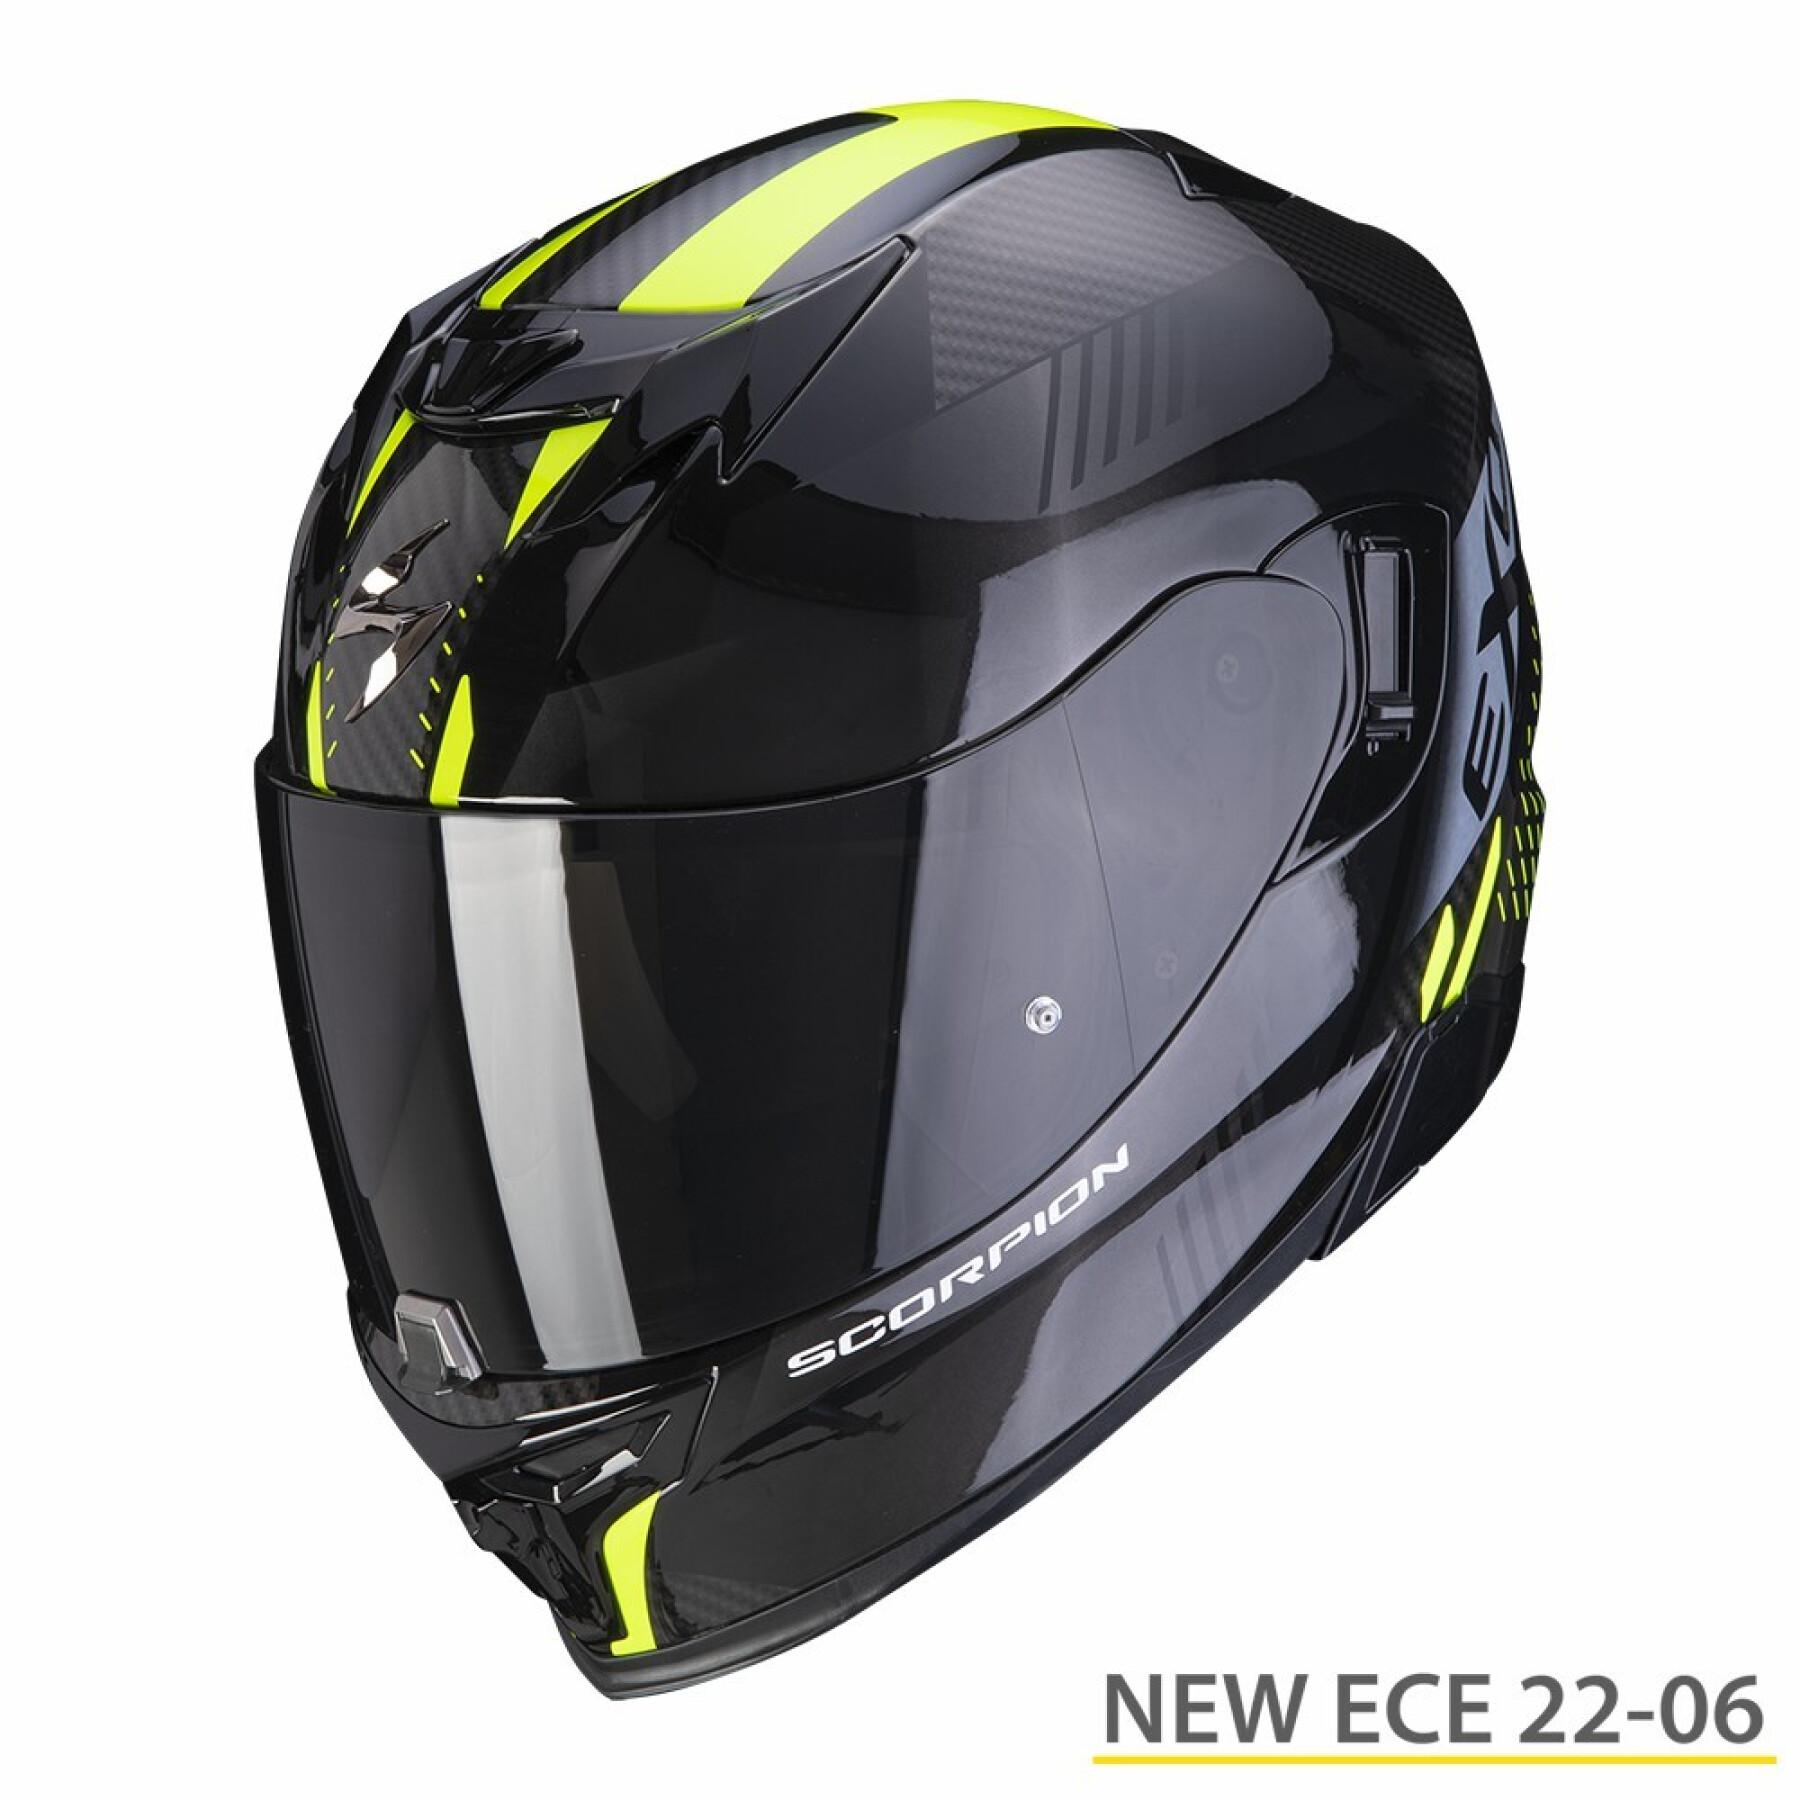 Capacete de motociclista de rosto inteiro Scorpion Exo-520 Evo Air Laten ECE 22-06